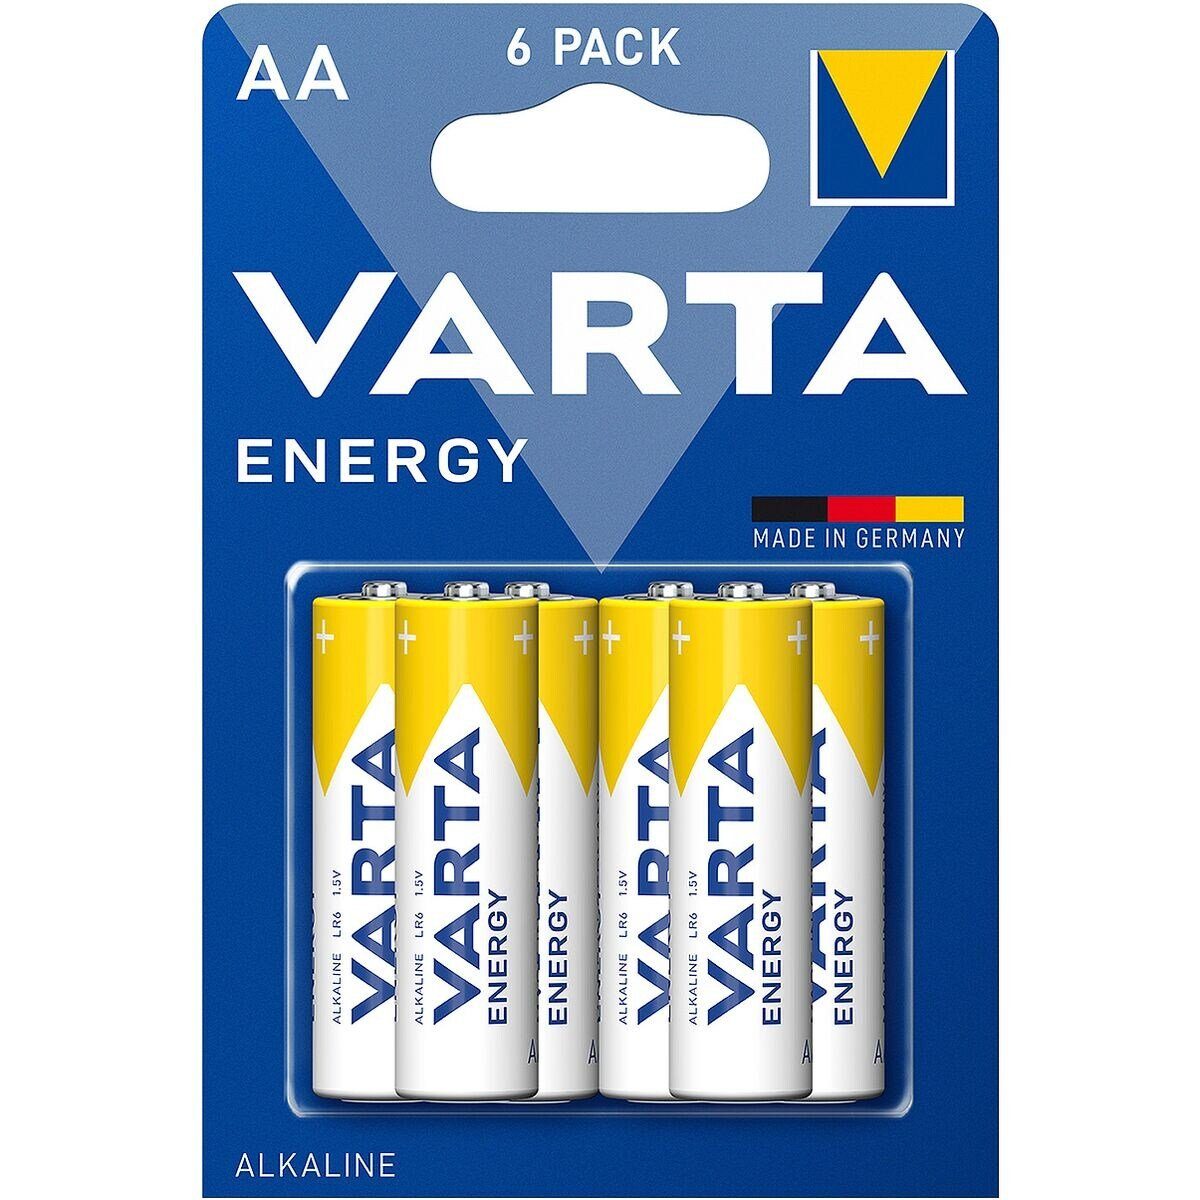 VARTA Energy Batterie, (1.5 V, 6 St), Mignon / AA / LR06 / LR6, 1,5 V, Alkali